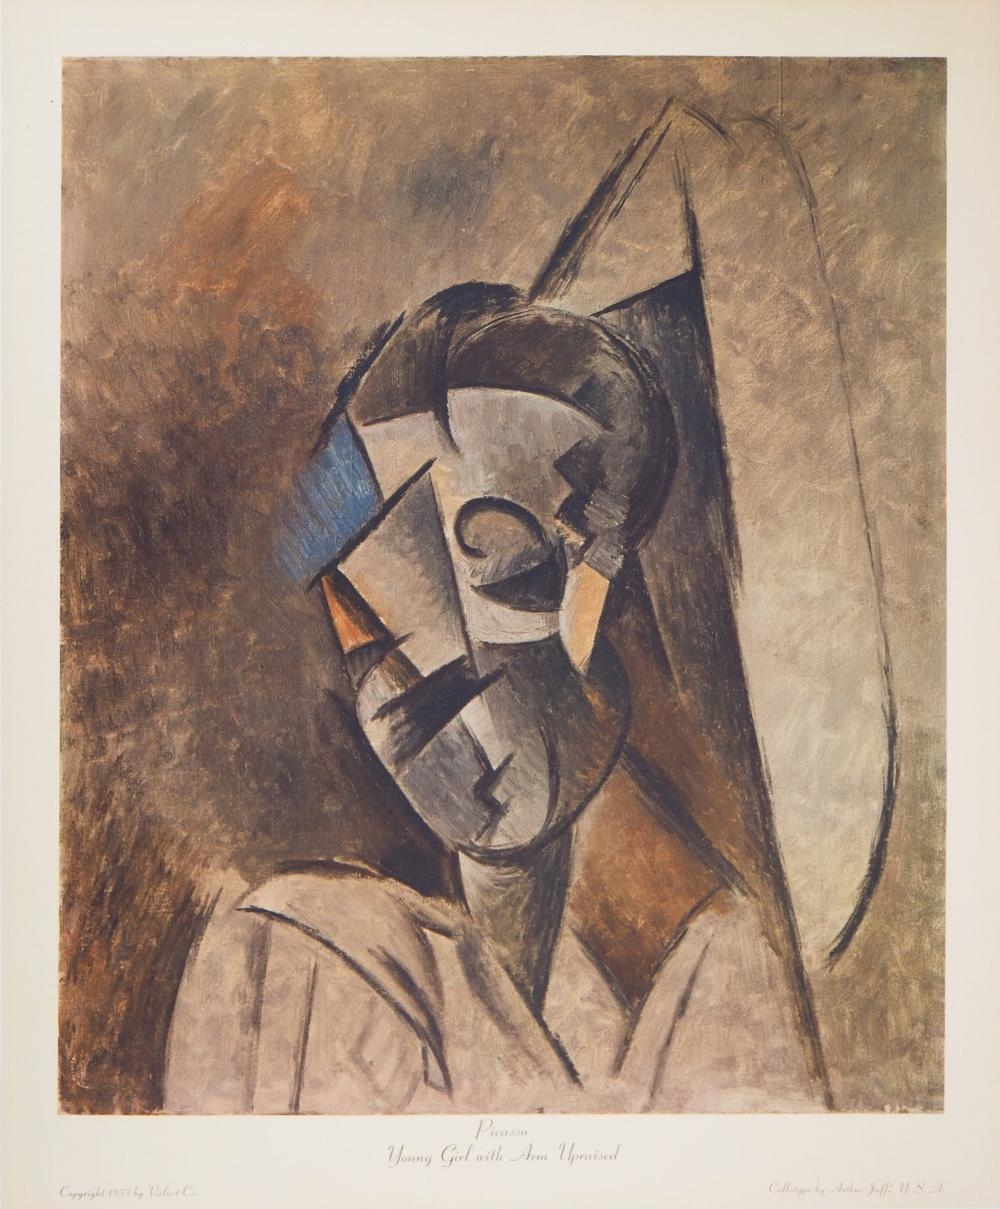 PABLO PICASSO - JEUNE FILLE AU BRAS LEVÉ by Pablo Picasso, 1953